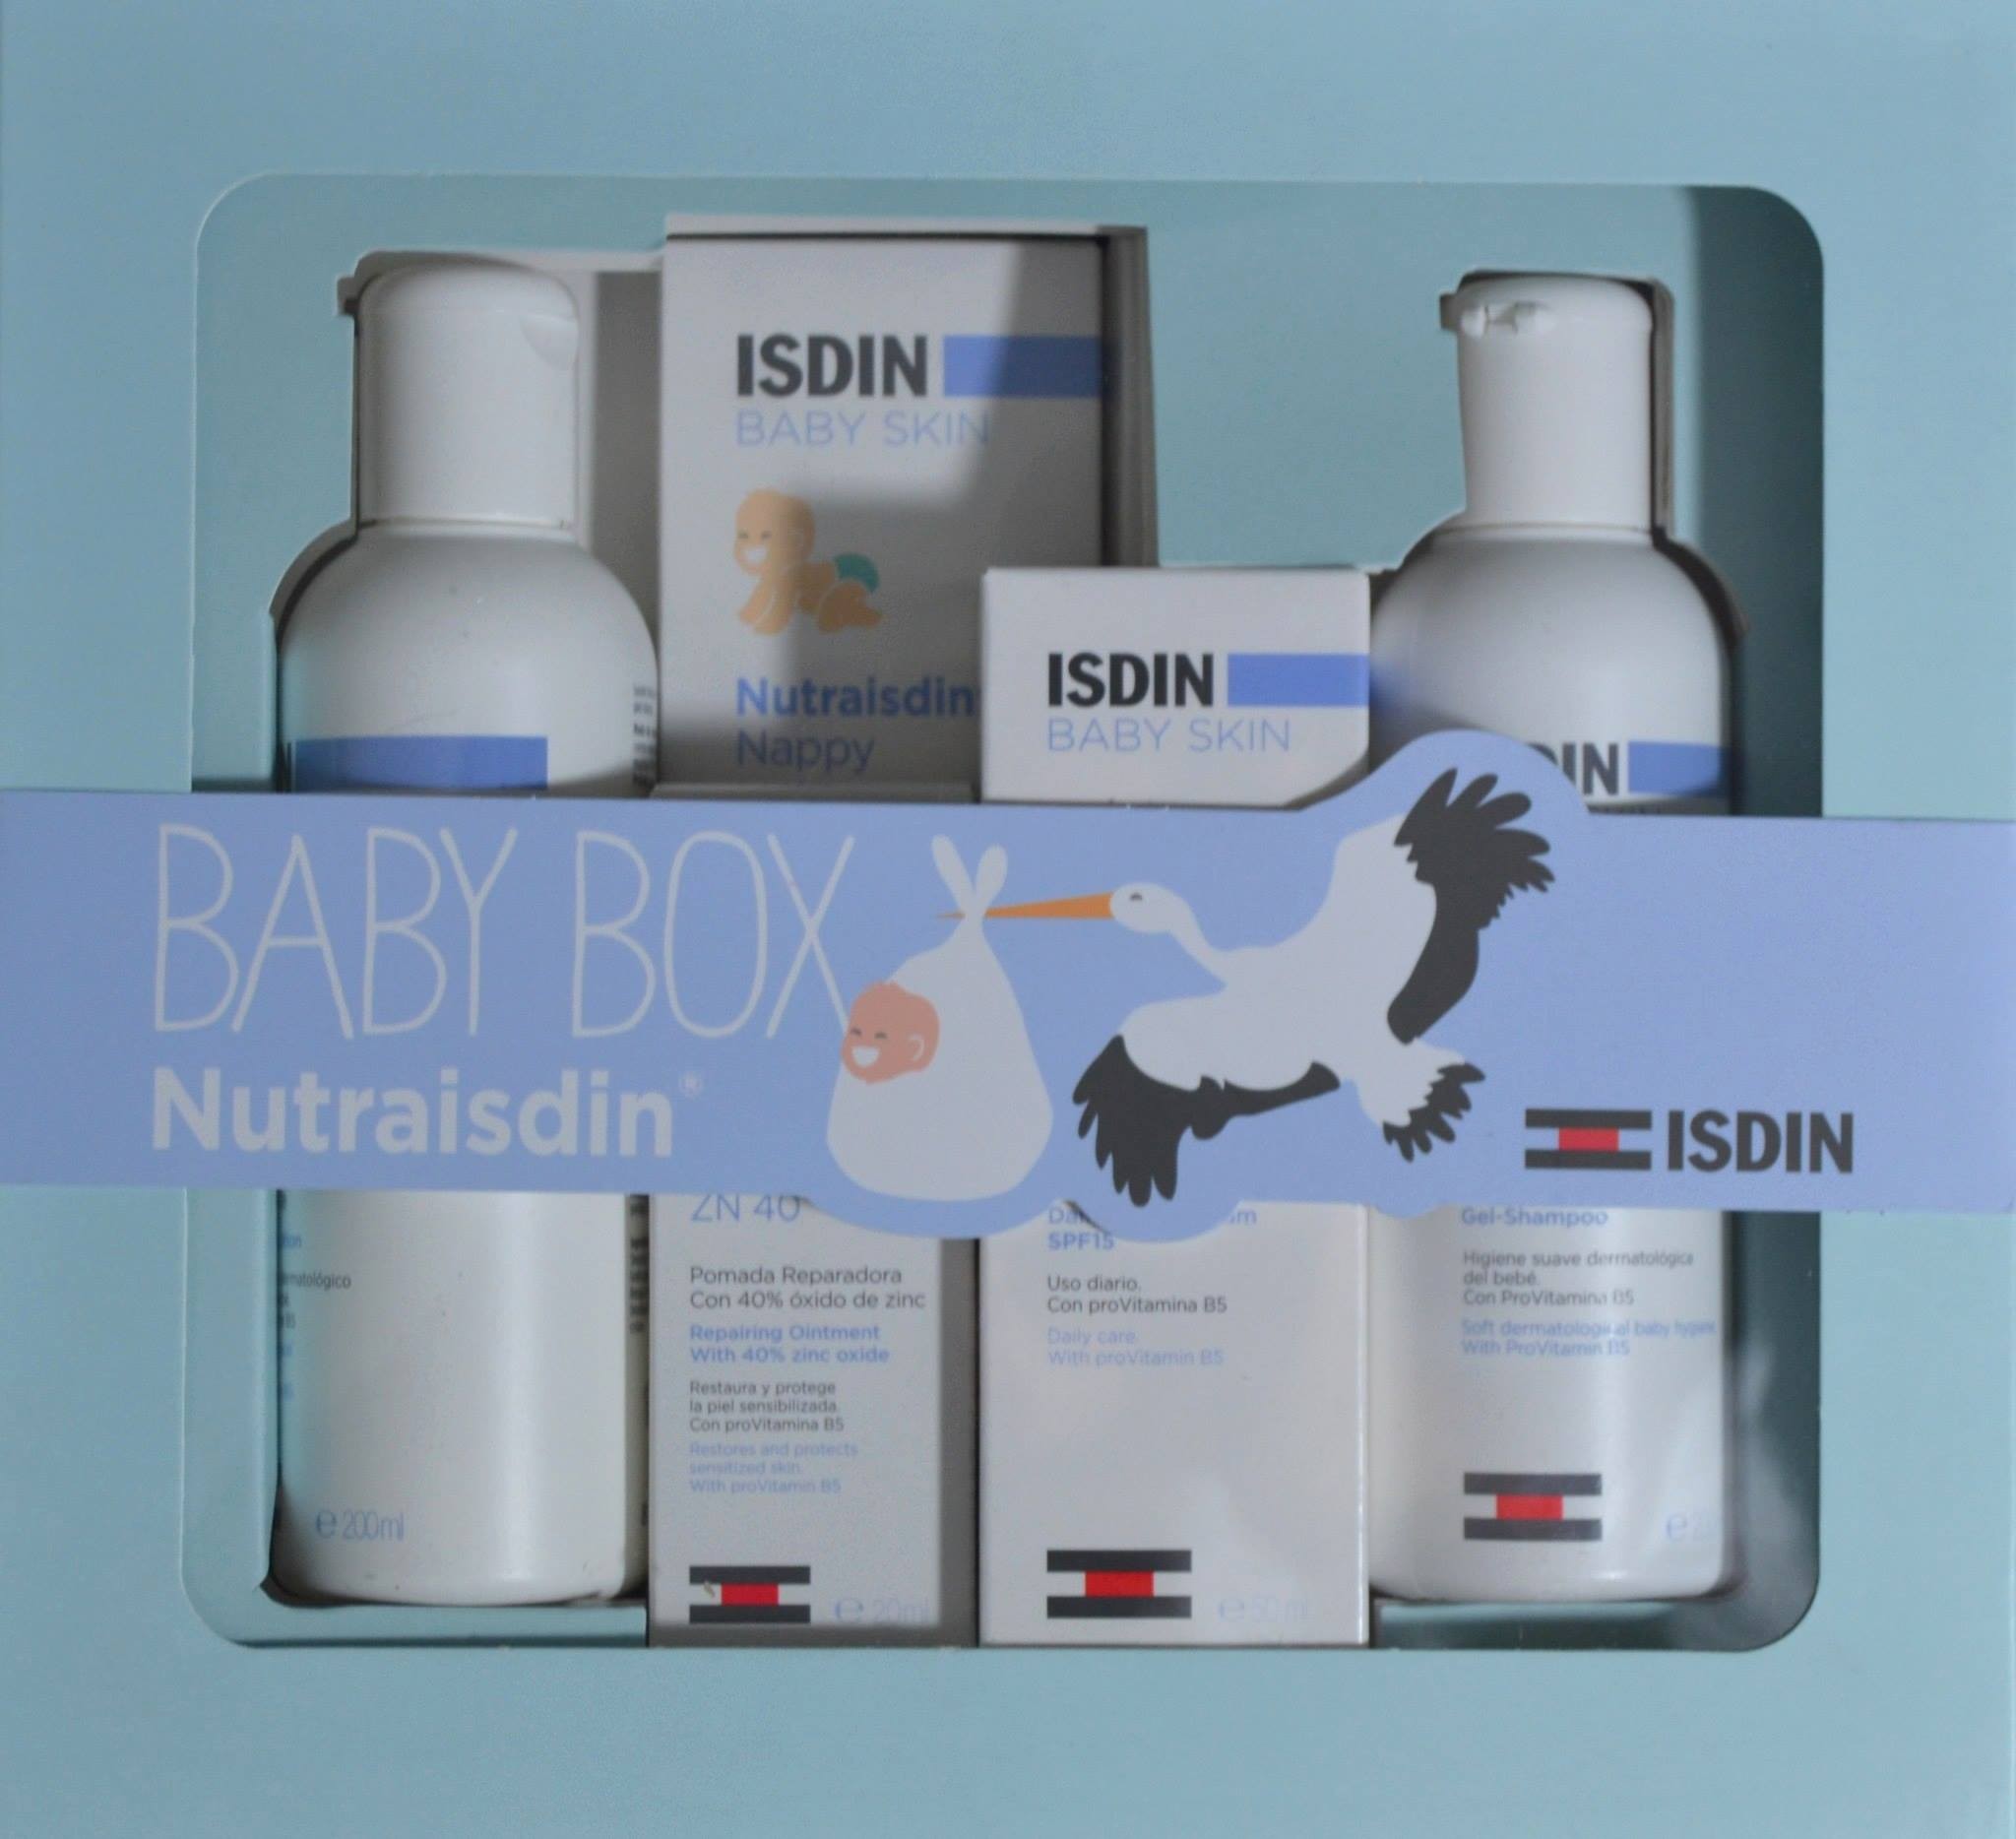 CANASTILLA BABY BOX NUTRAISDIN - Farmacia Anna Riba